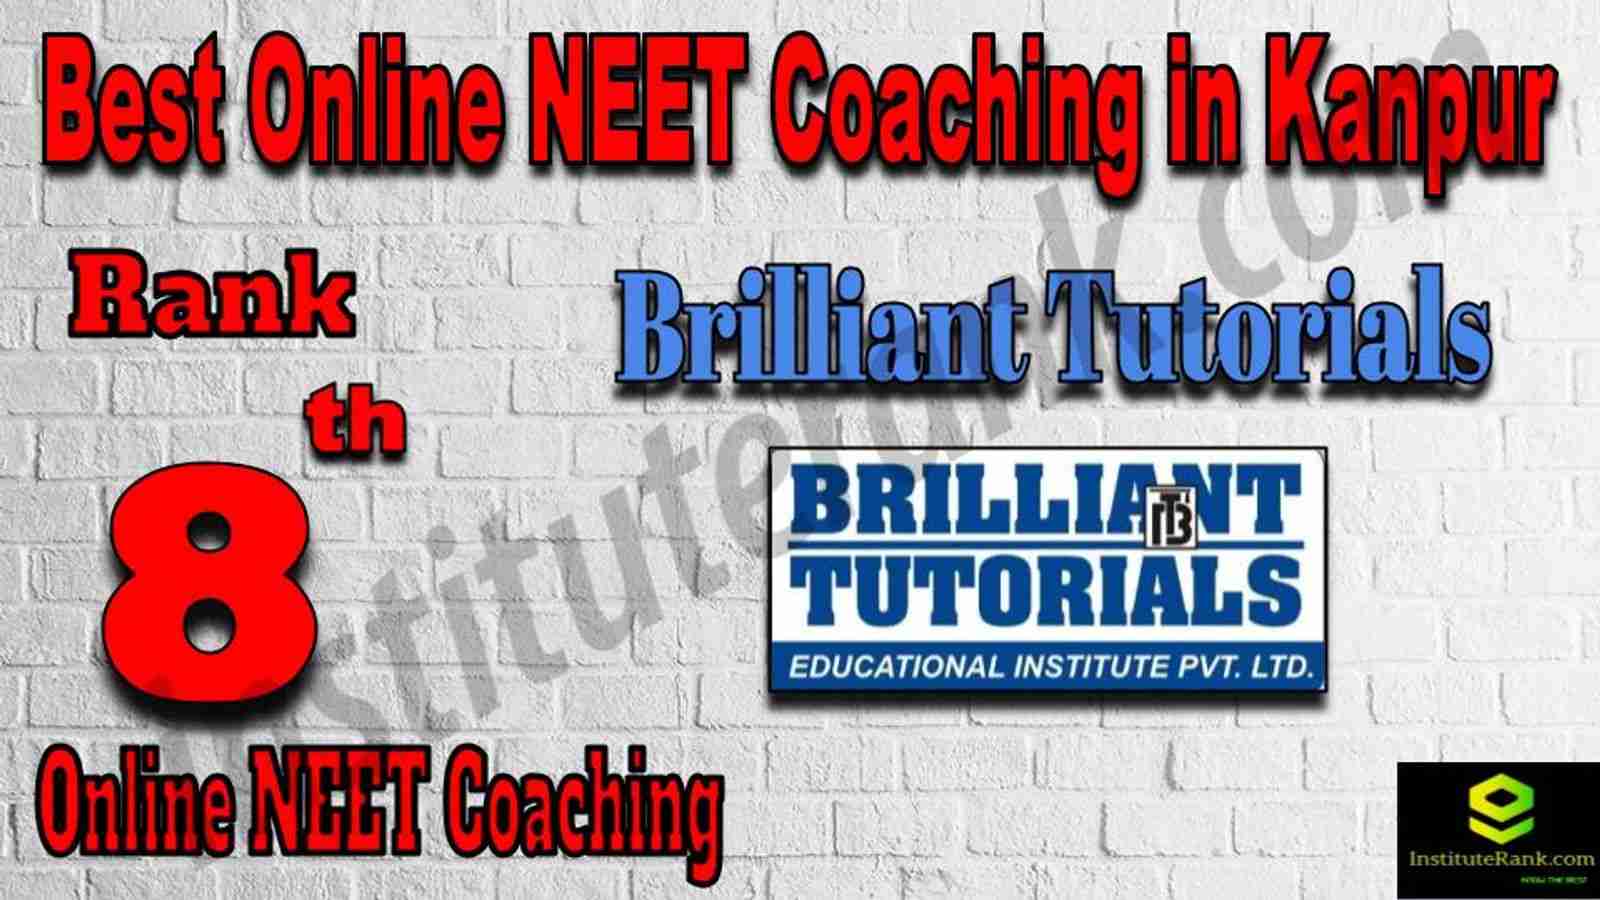 Rank 8 Best Online NEET Coaching in Kanpur